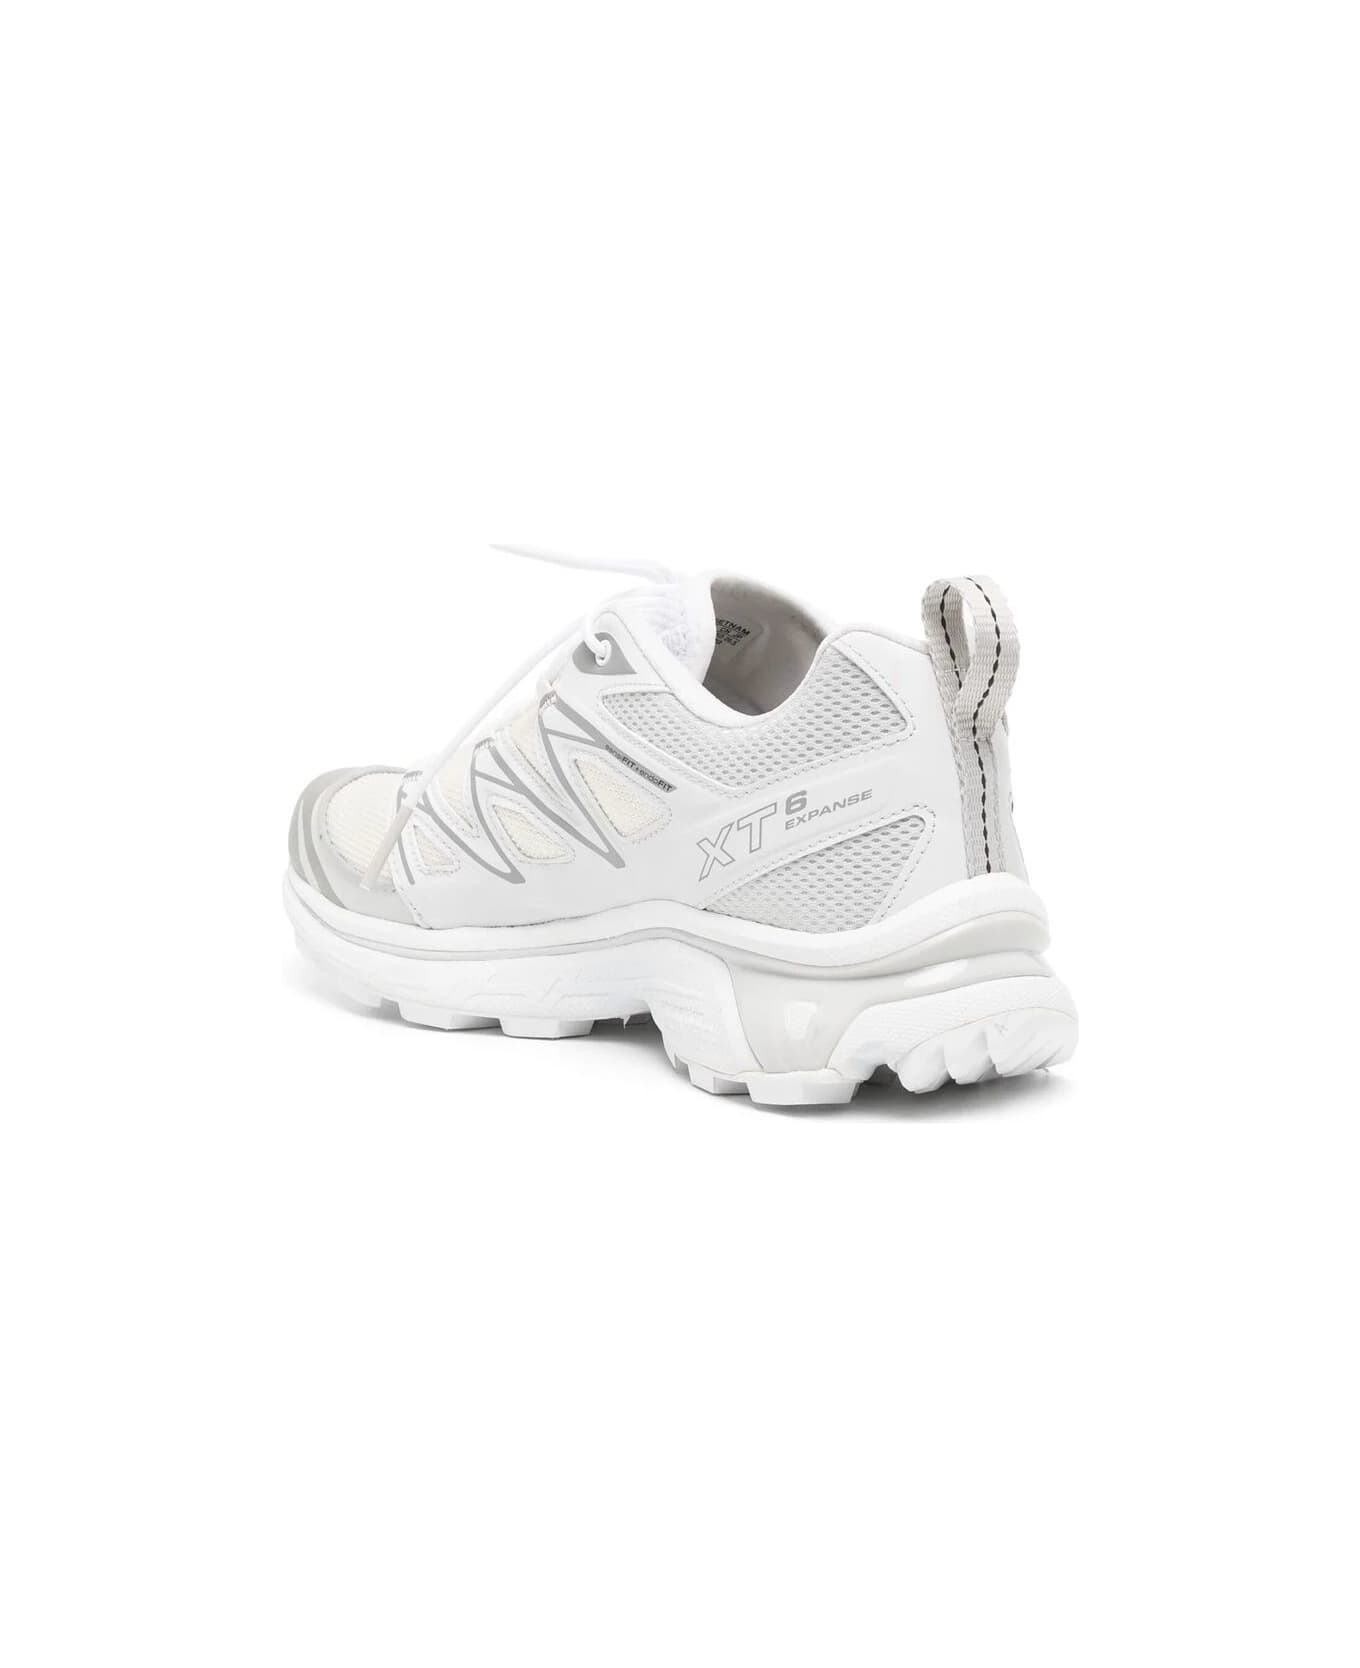 Salomon Xt-6 Expanse Sneakers - Vanilla Ice White Alloy スニーカー